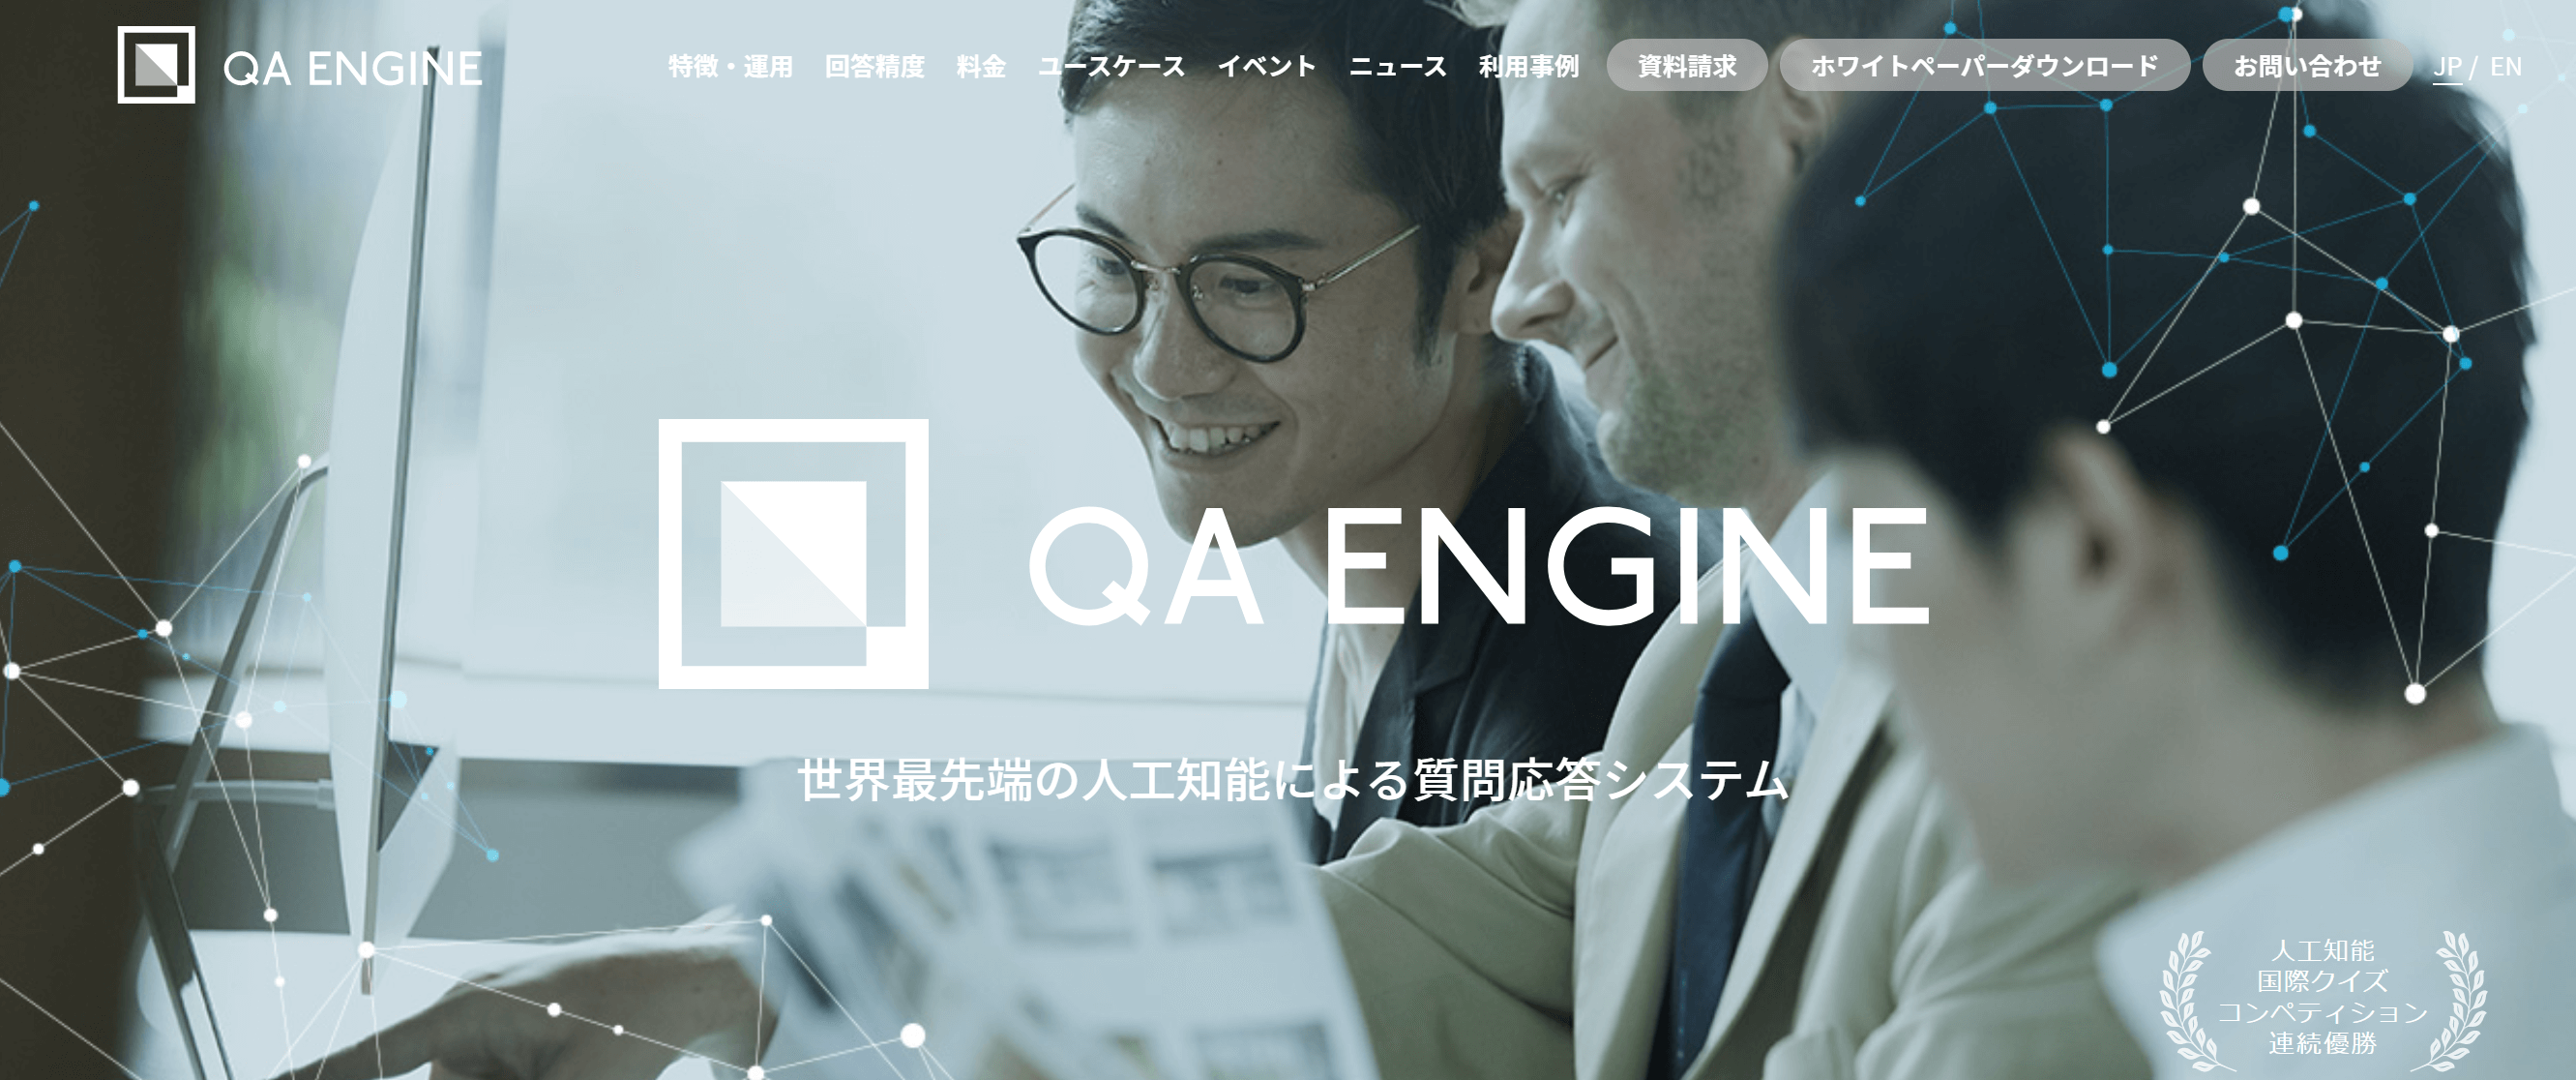 FAQシステム_おすすめ_QA ENGINE